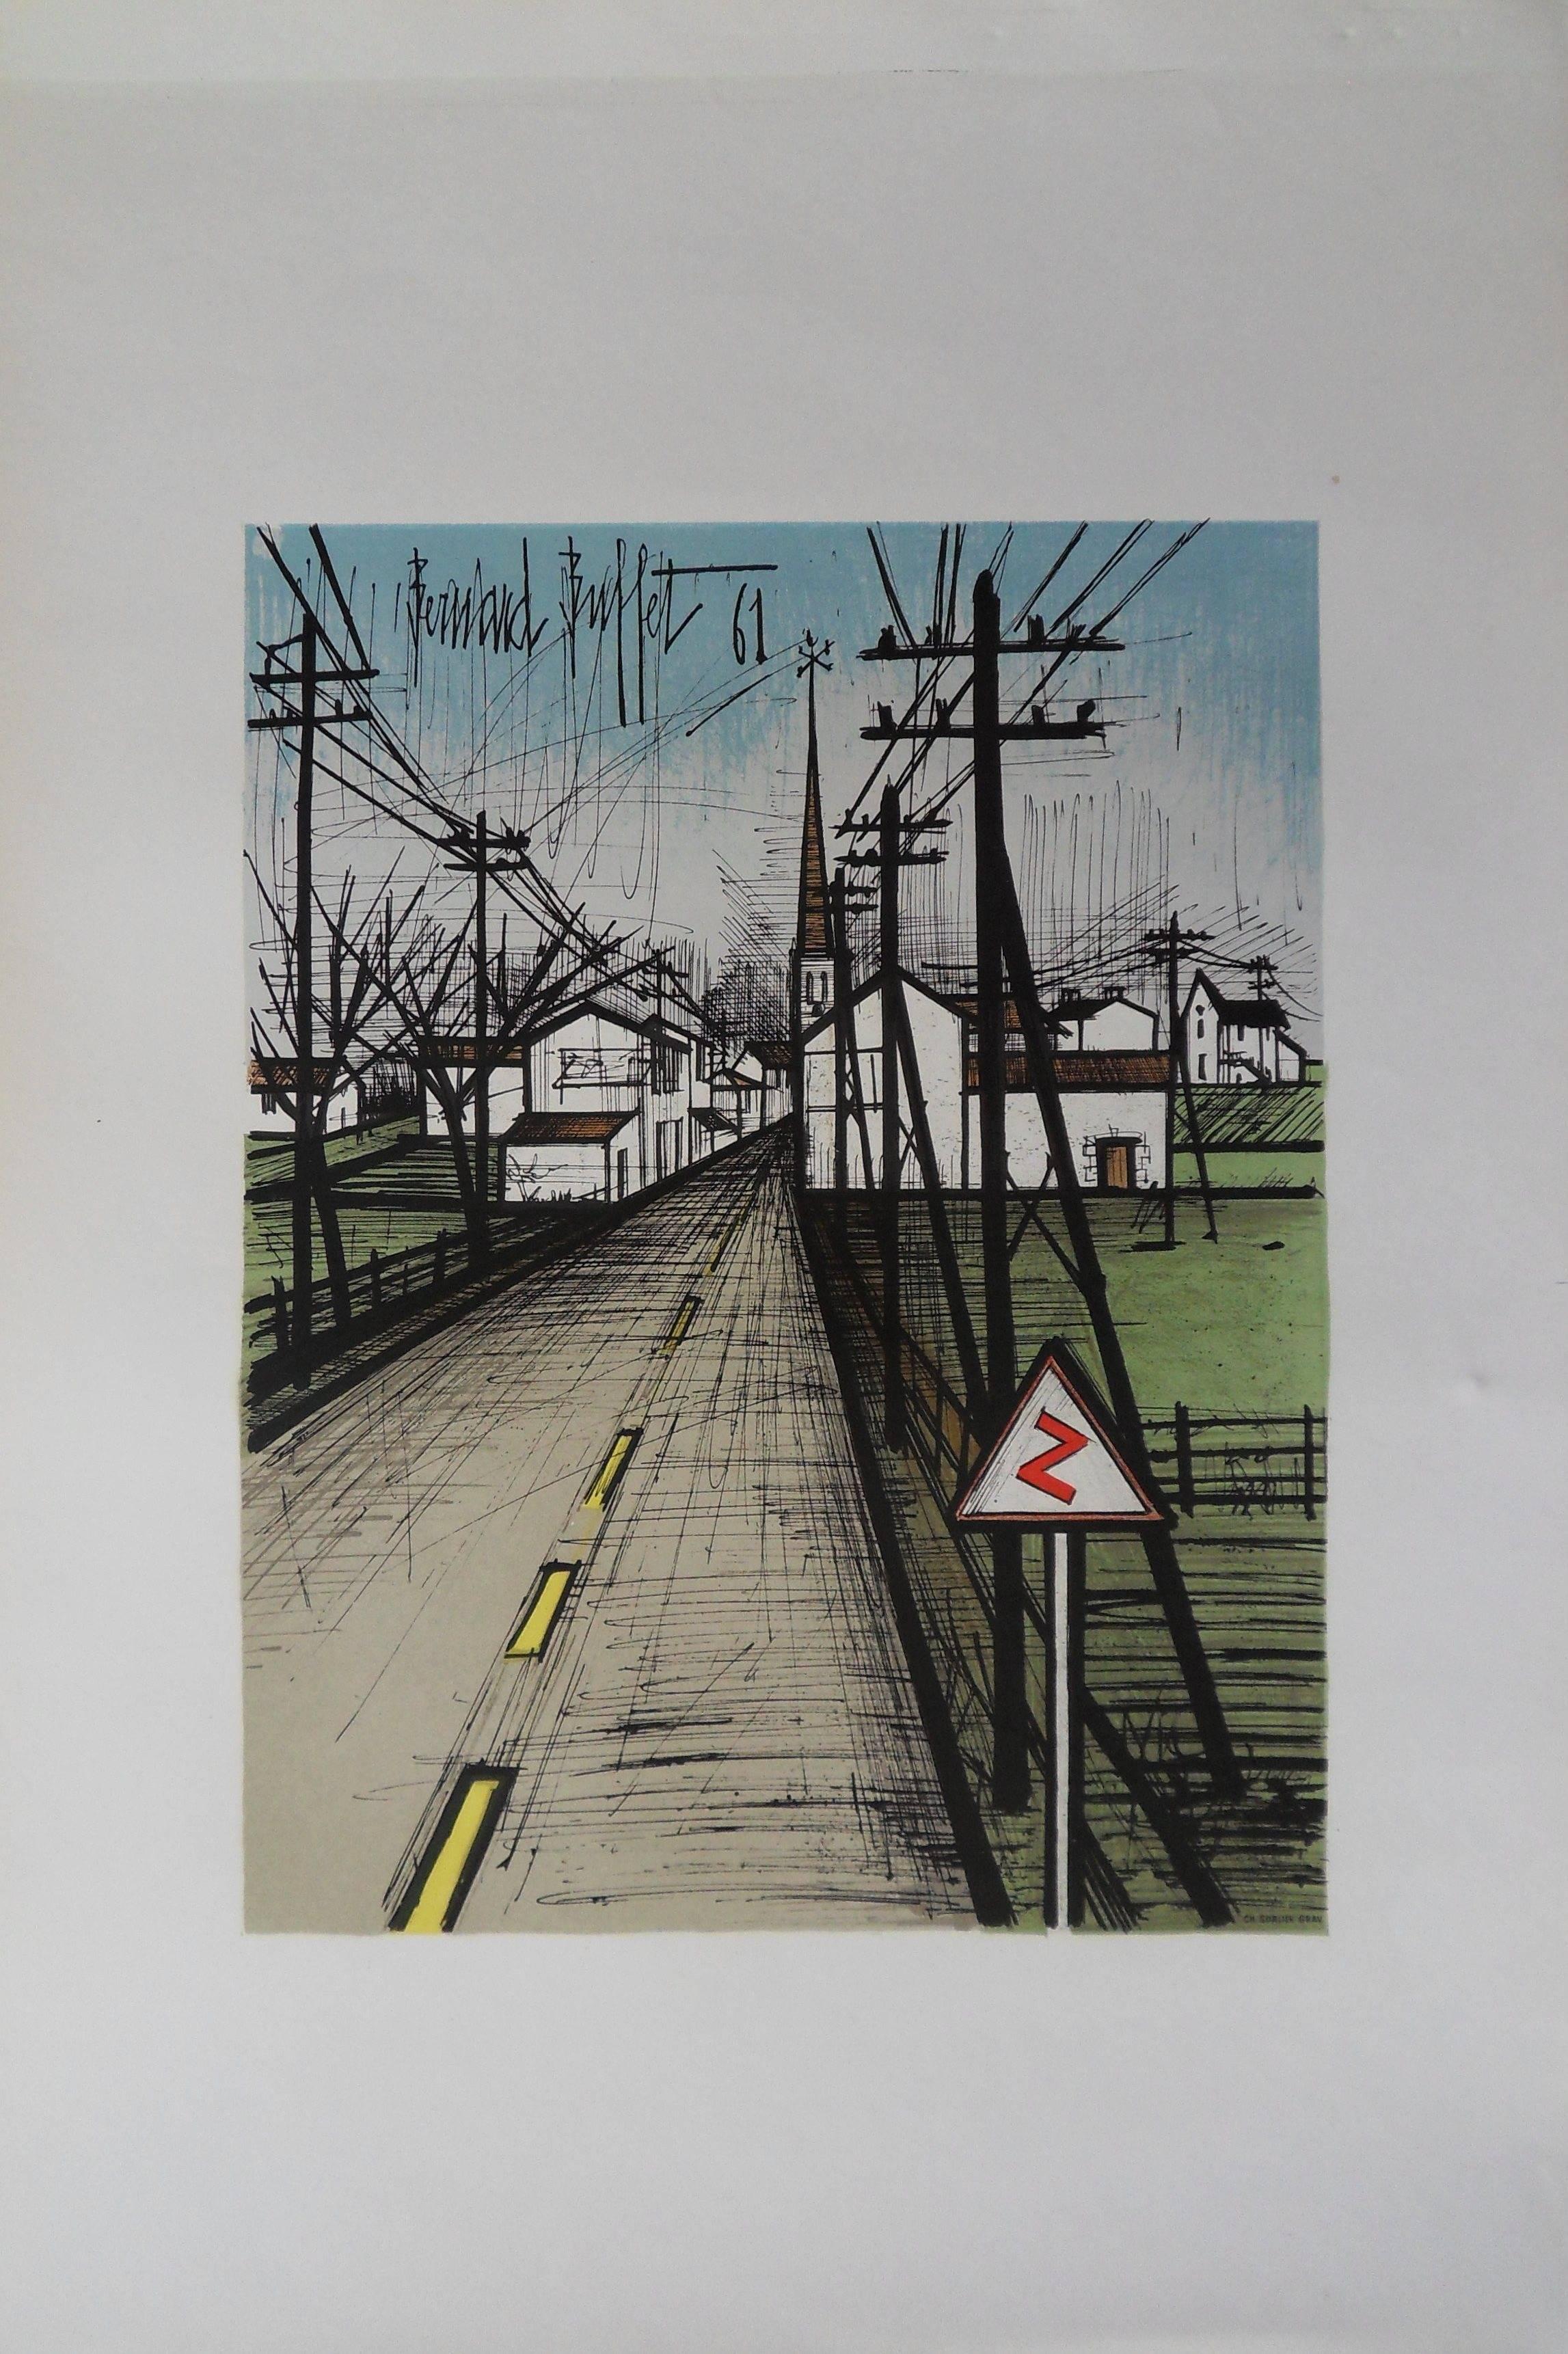 The Road - Original lithograph - Mourlot 1962 - Gray Landscape Print by Bernard Buffet